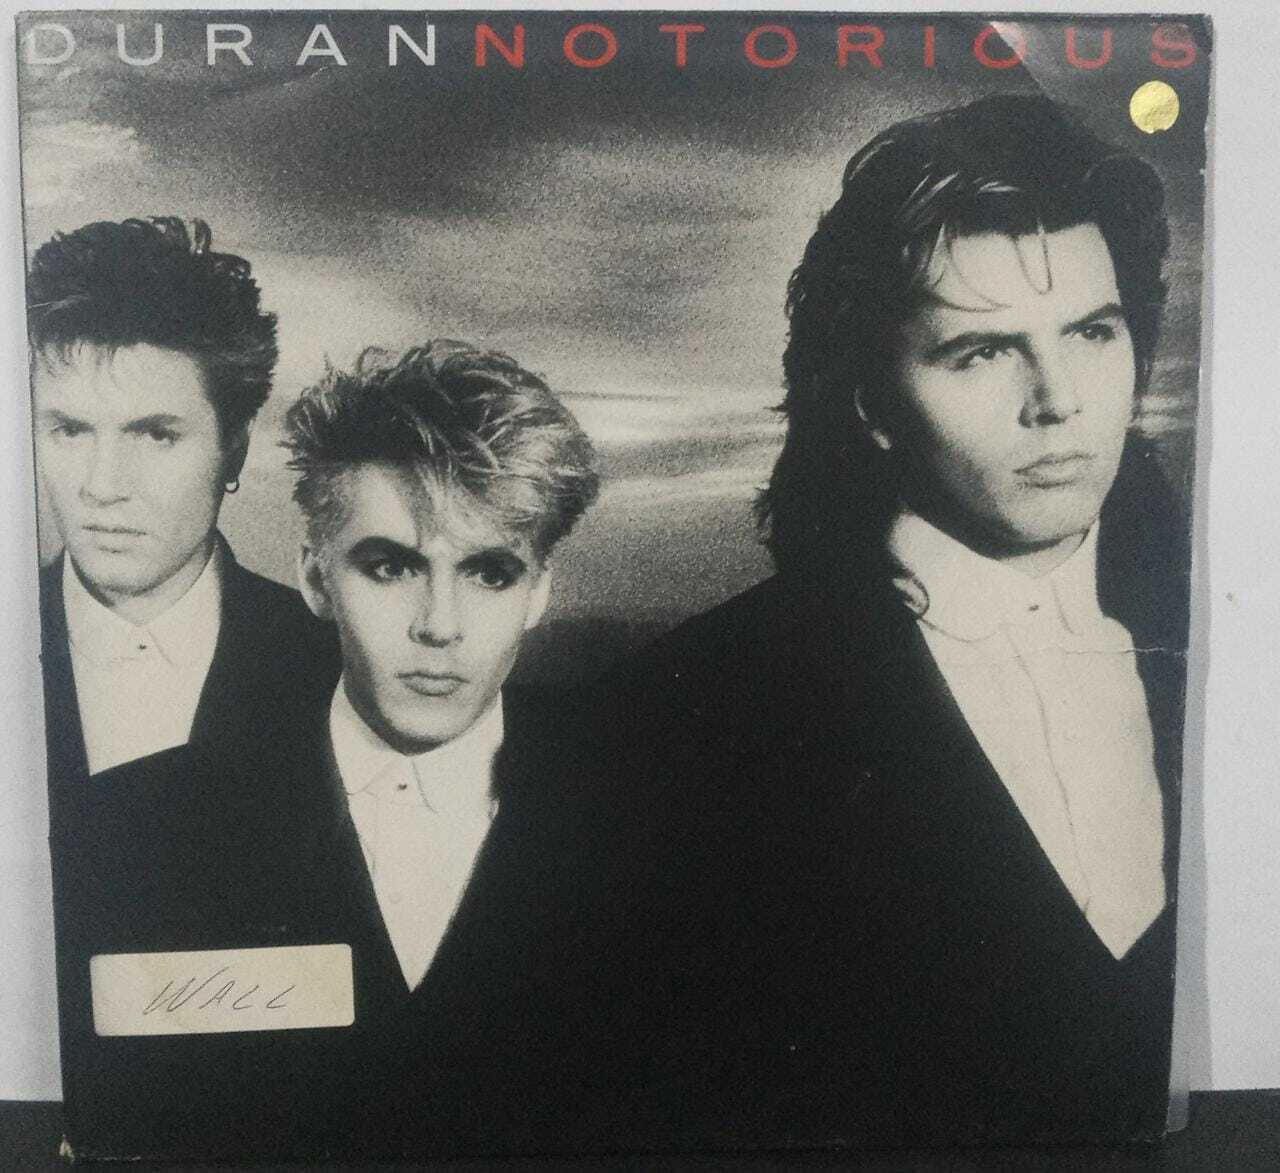 Vinil - Duran Duran - Notorious